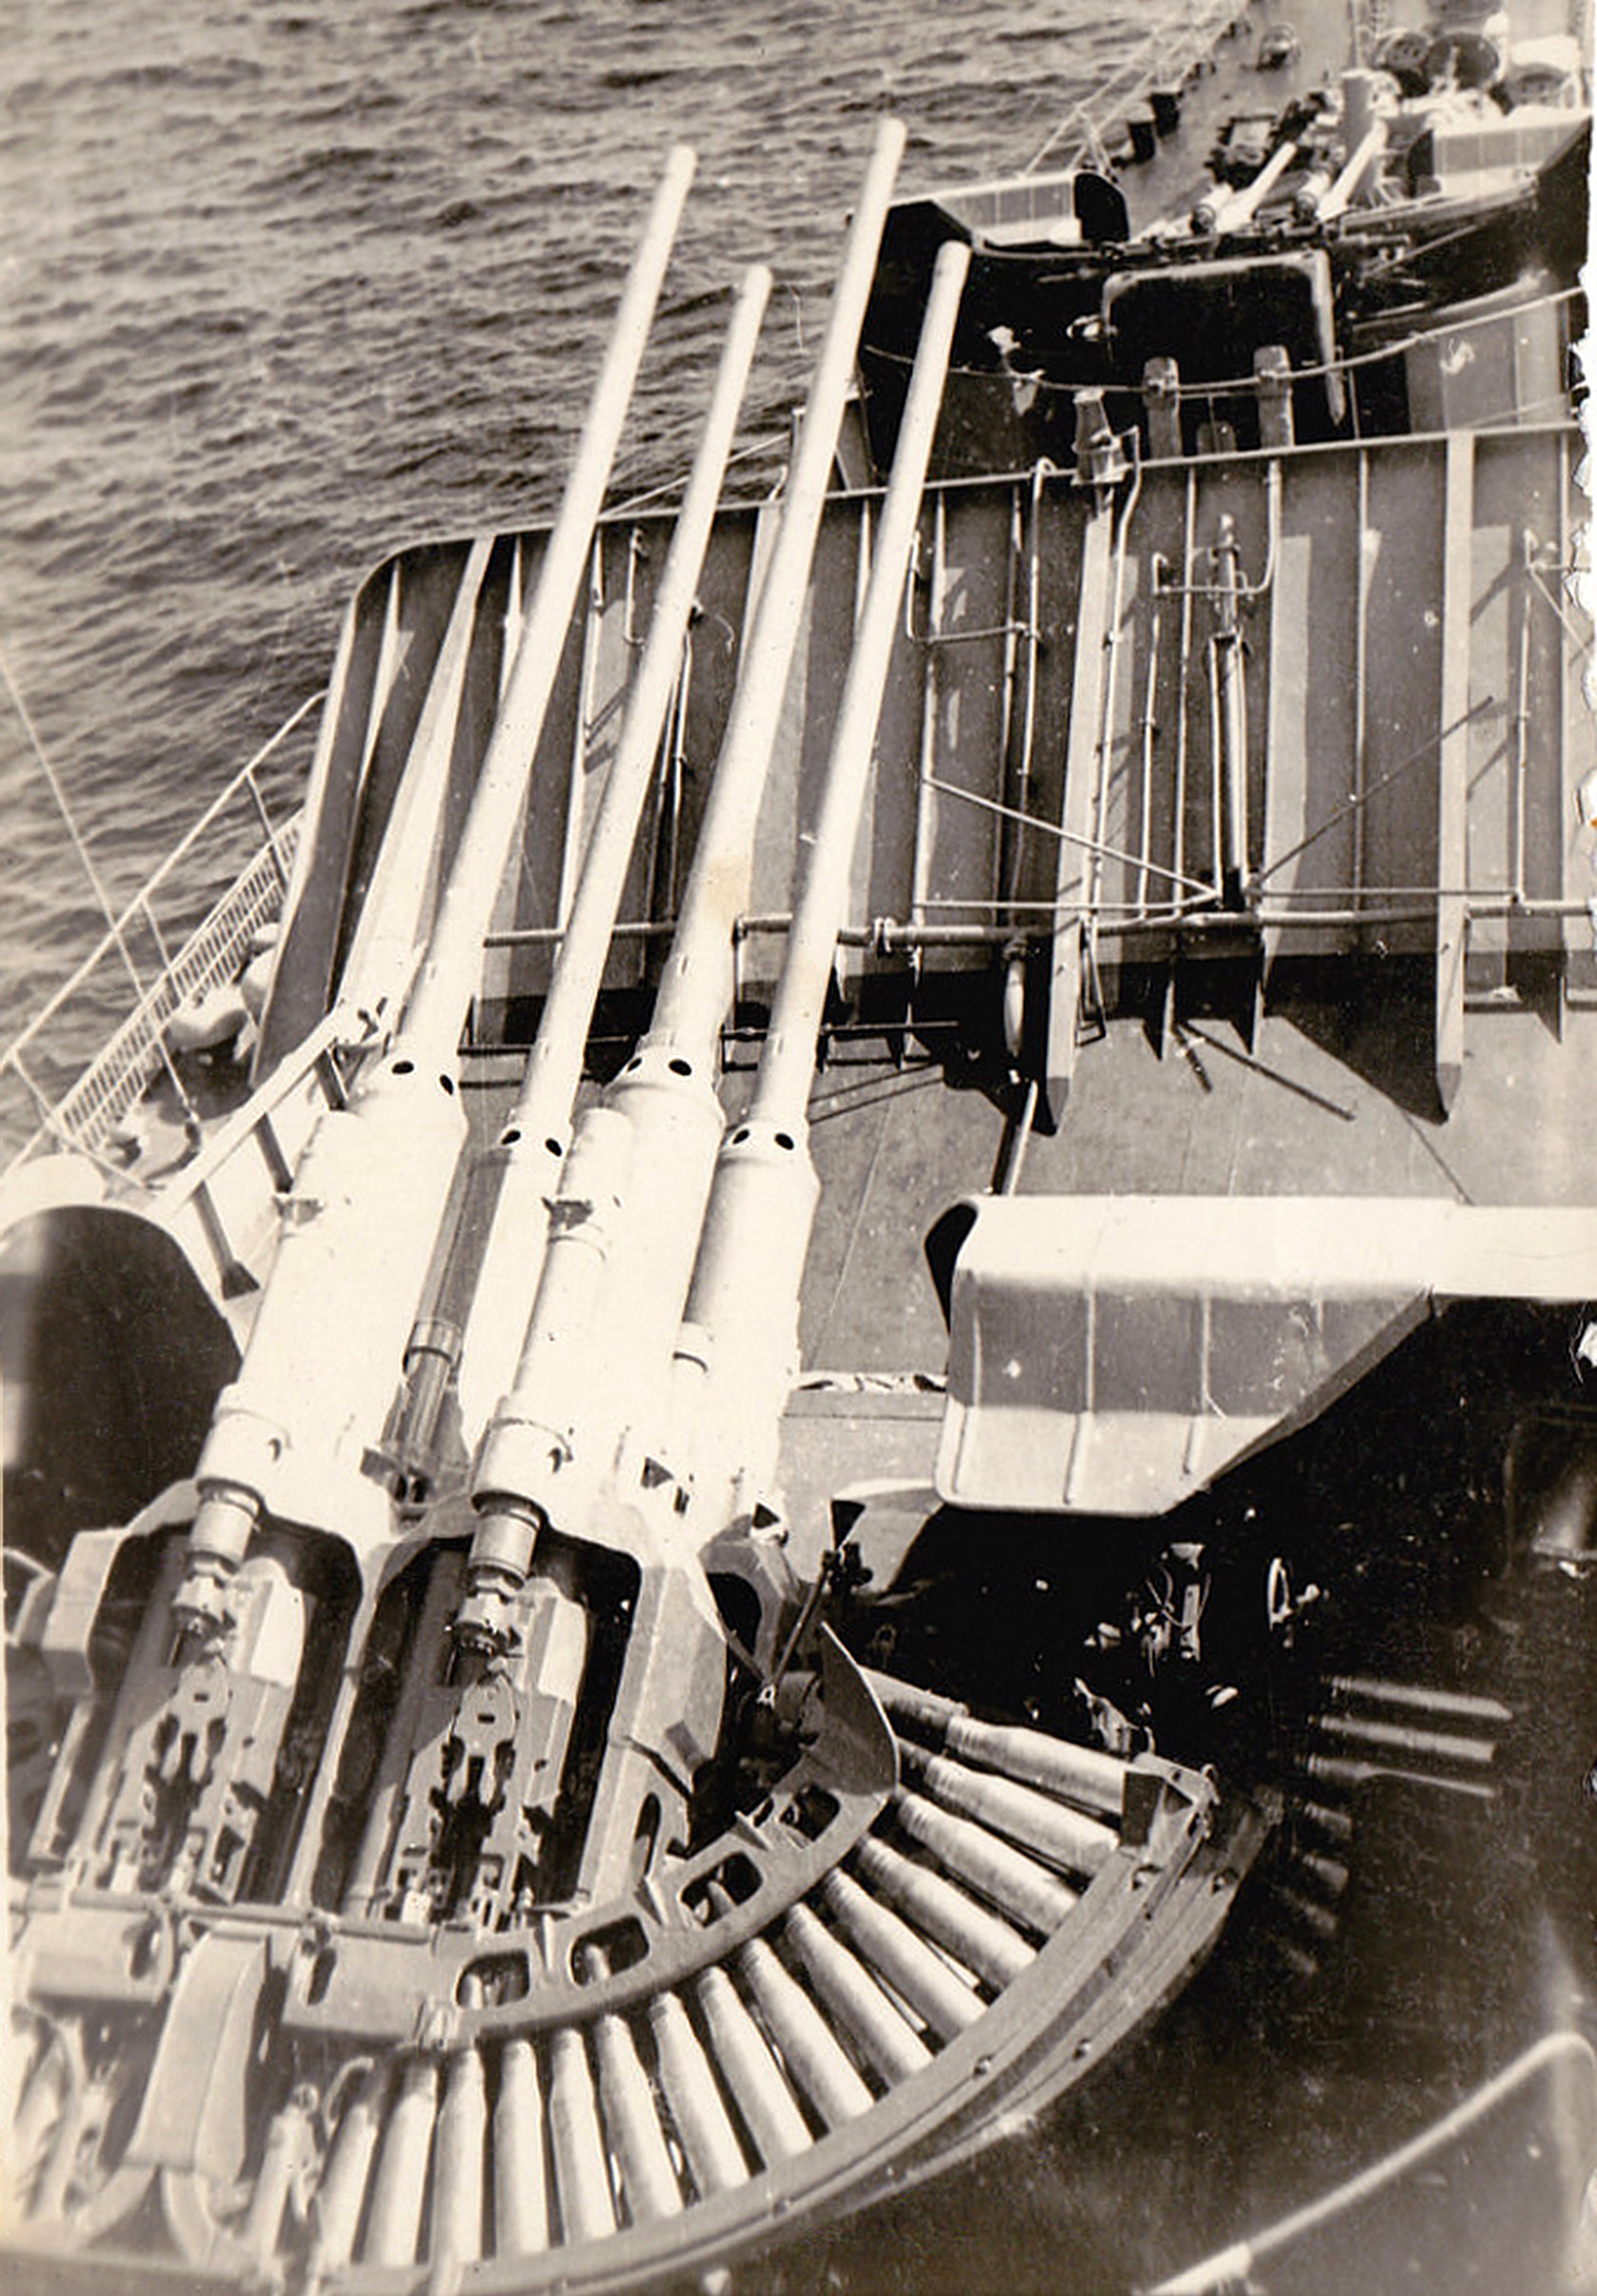 zif-75型57毫米舰炮采用弧形弹槽供弹